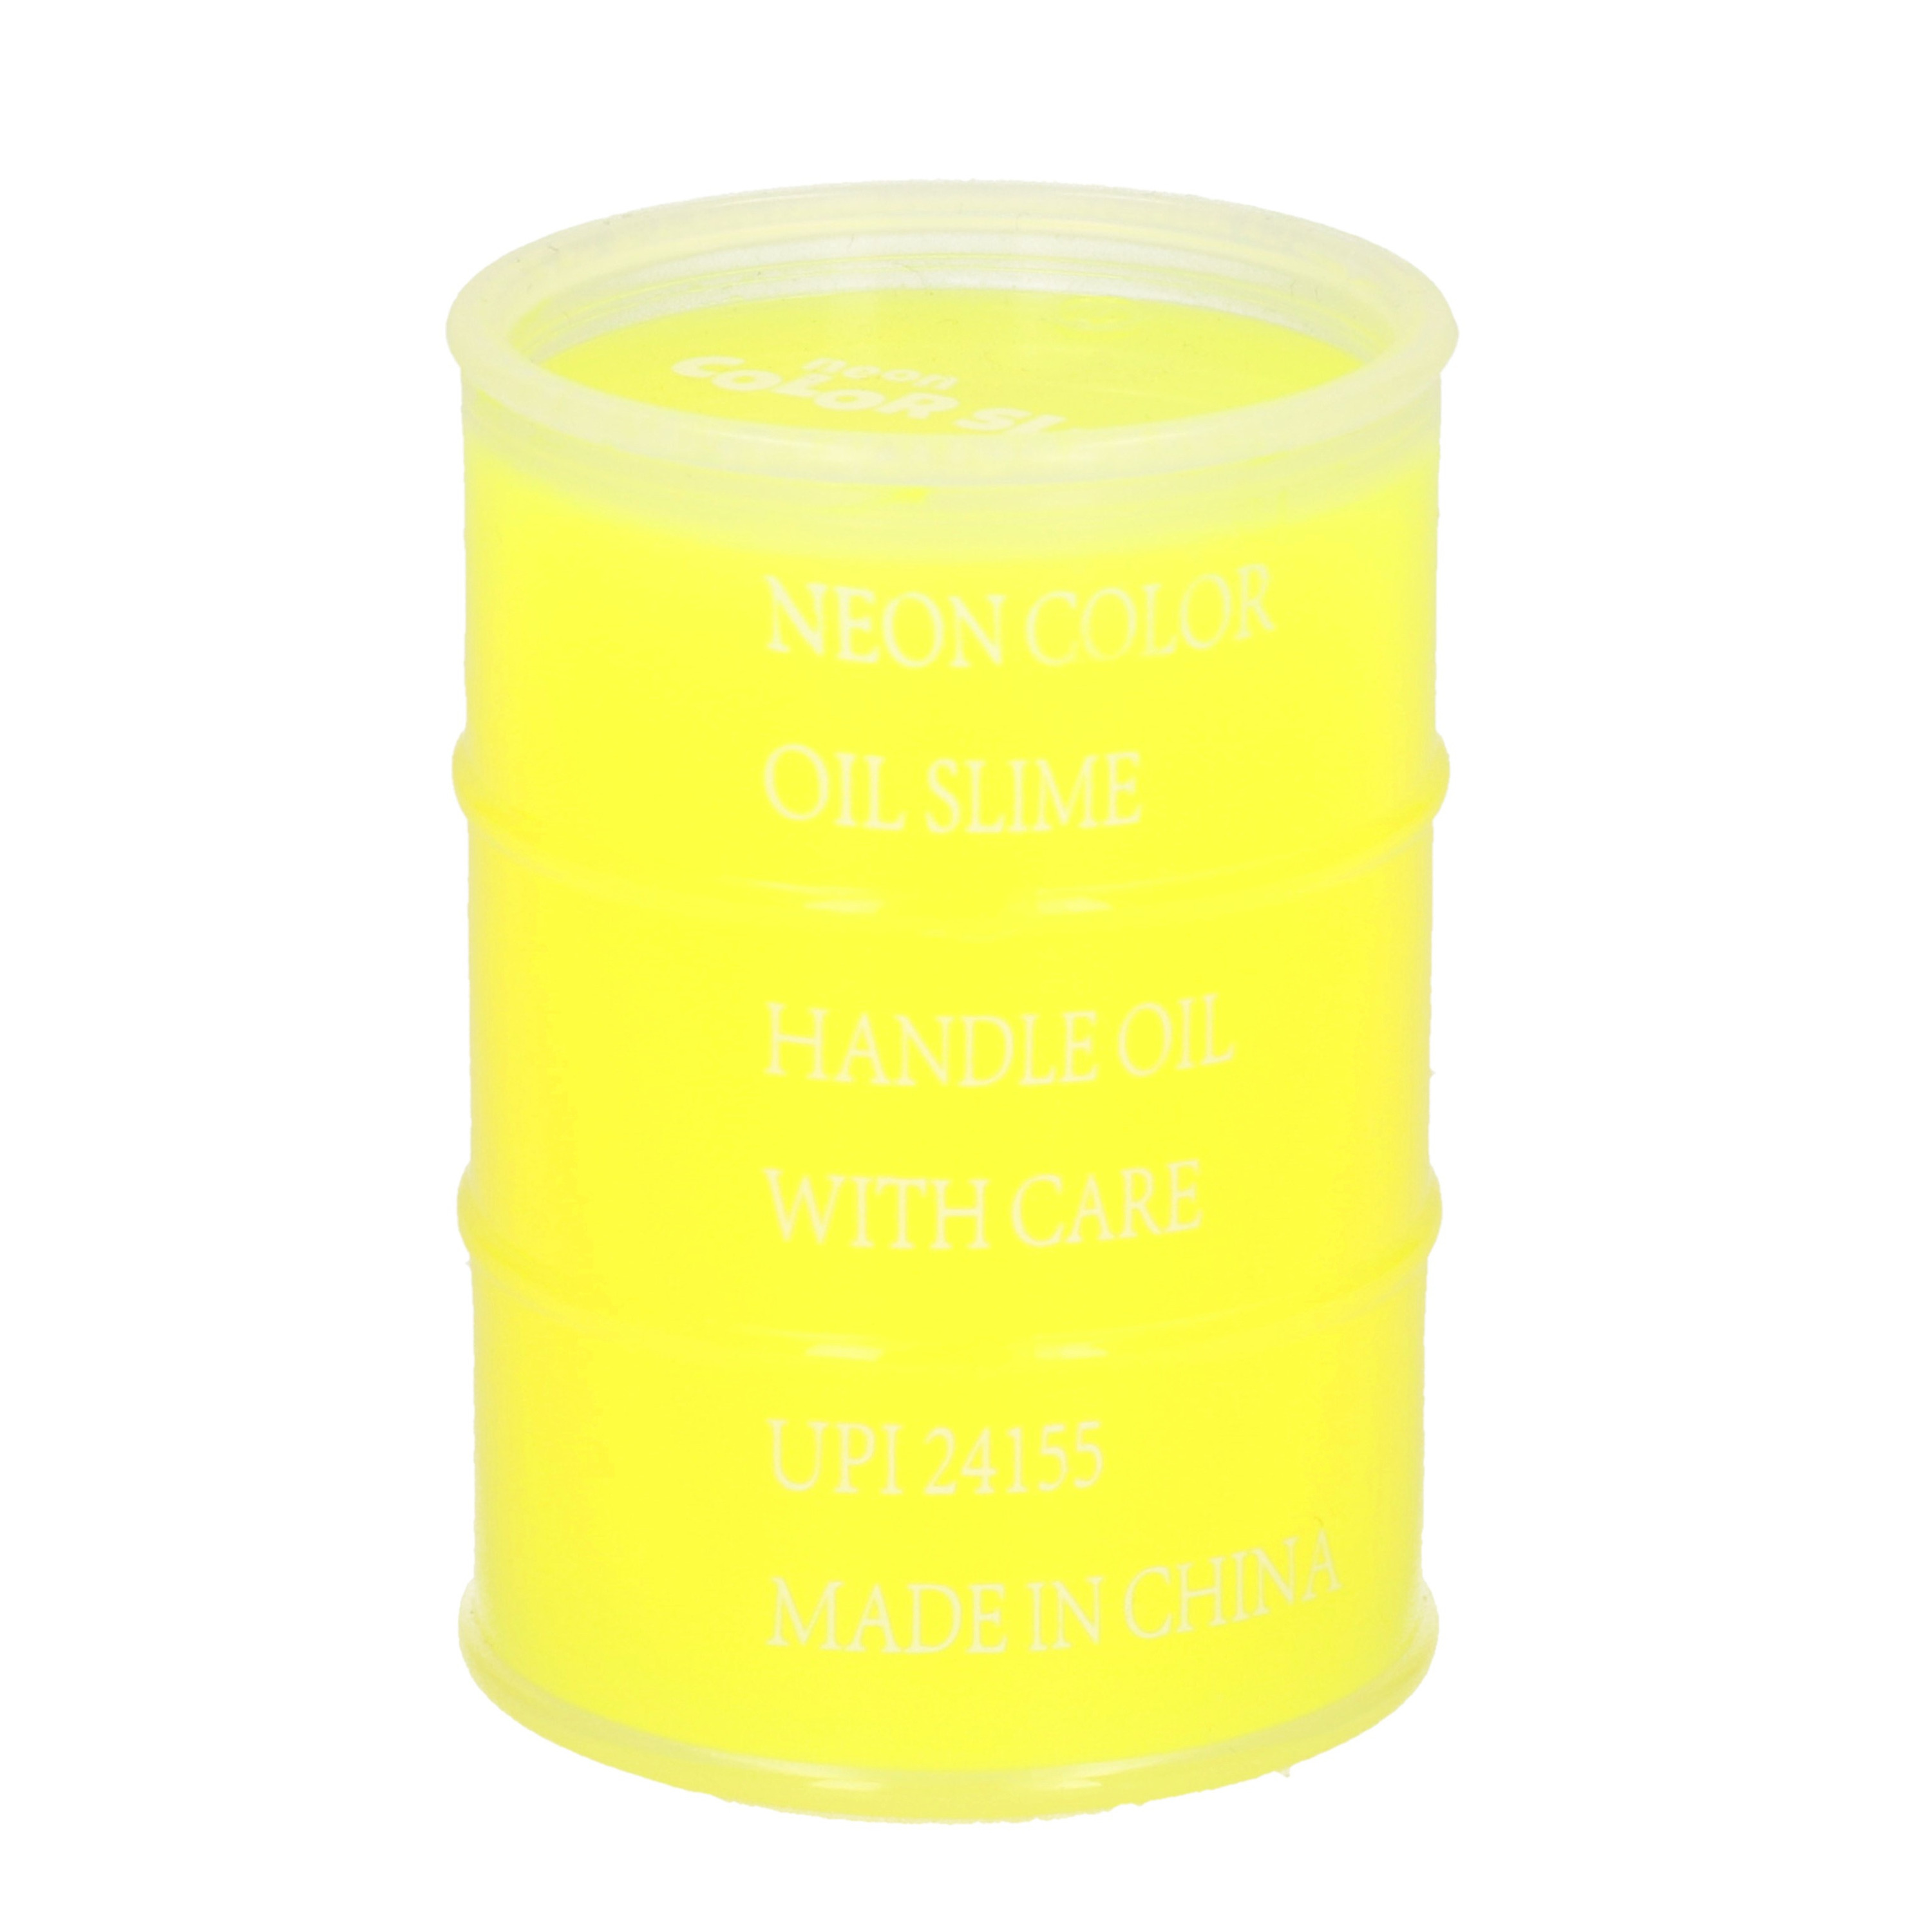 1x Potjes speelgoed-hobby slijm geel in olievat 5,5 x 8 cm 150 ml inhoud